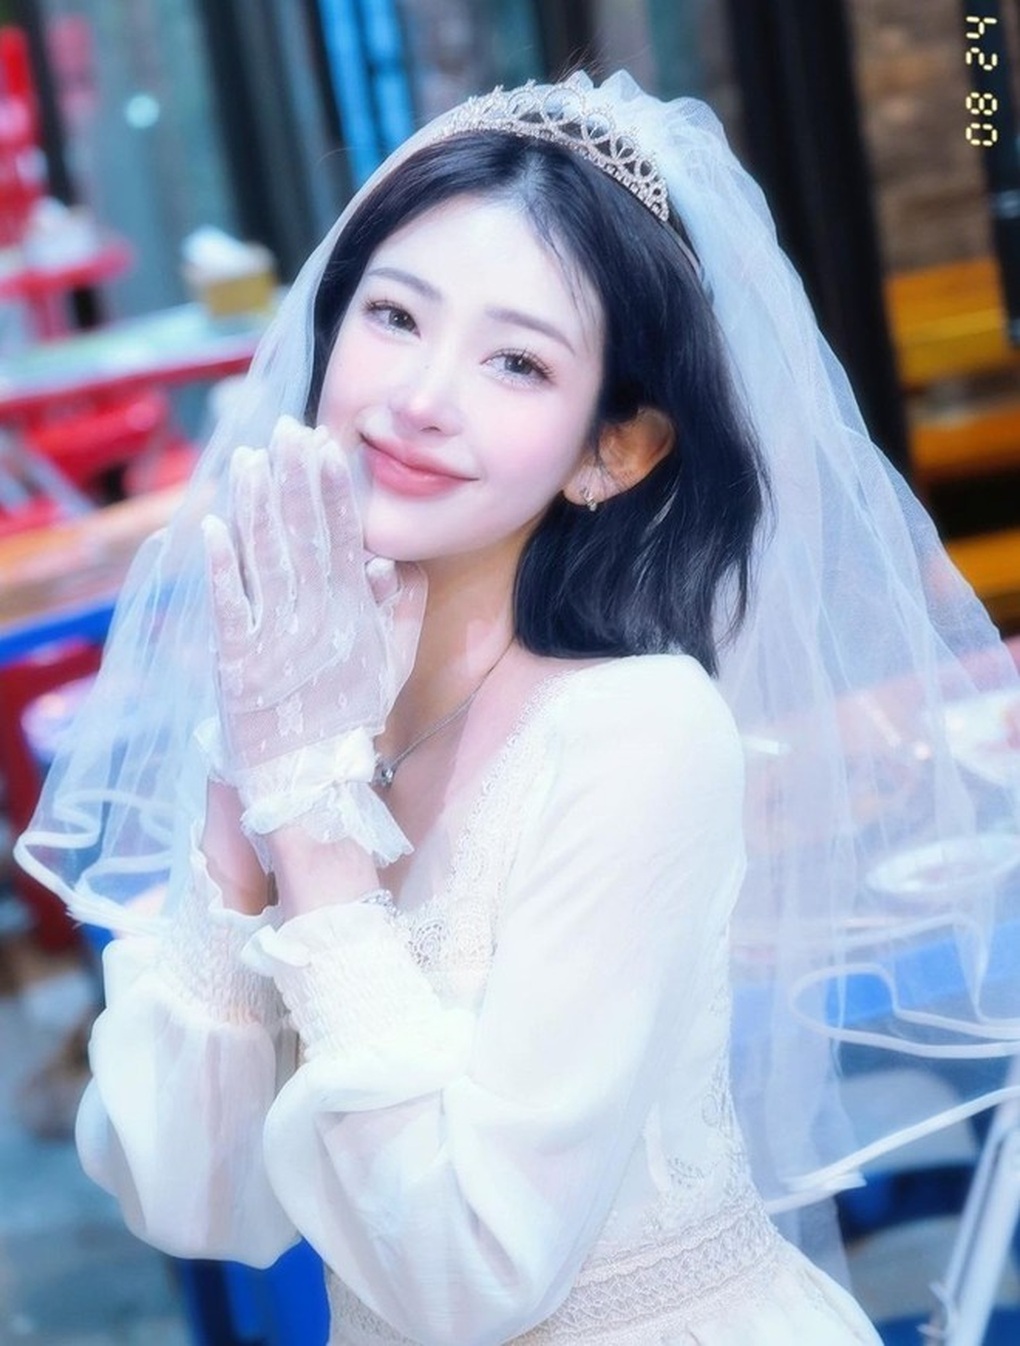 Giảm 46kg, con gái của Choi Jin Sil sở hữu dáng vóc nóng bỏng, sống vui vẻ - Ảnh 6.